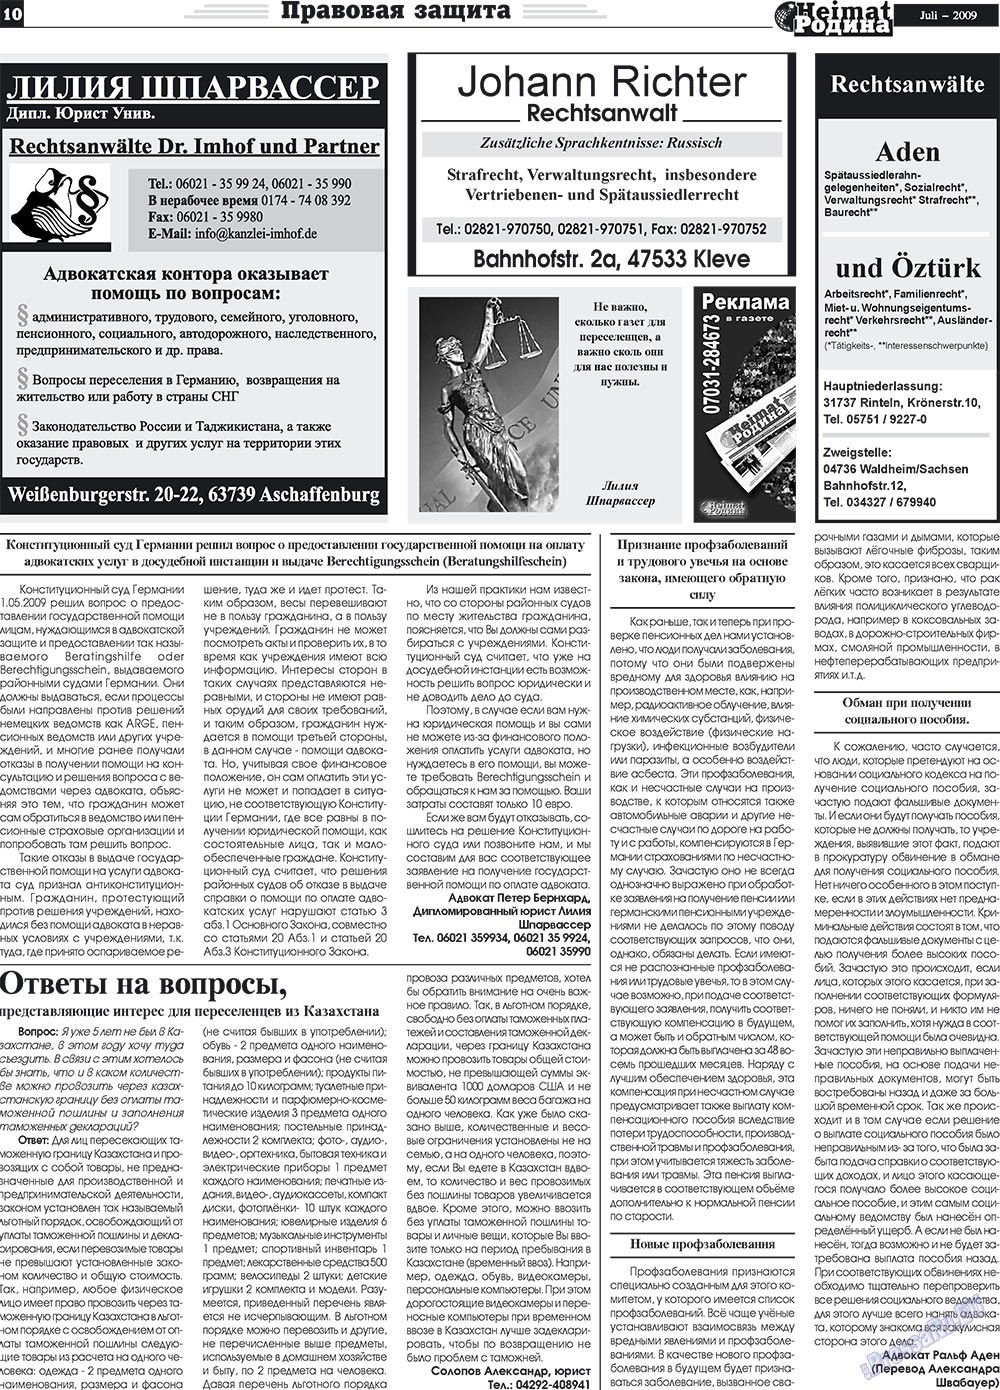 Heimat-Родина (газета). 2009 год, номер 7, стр. 10